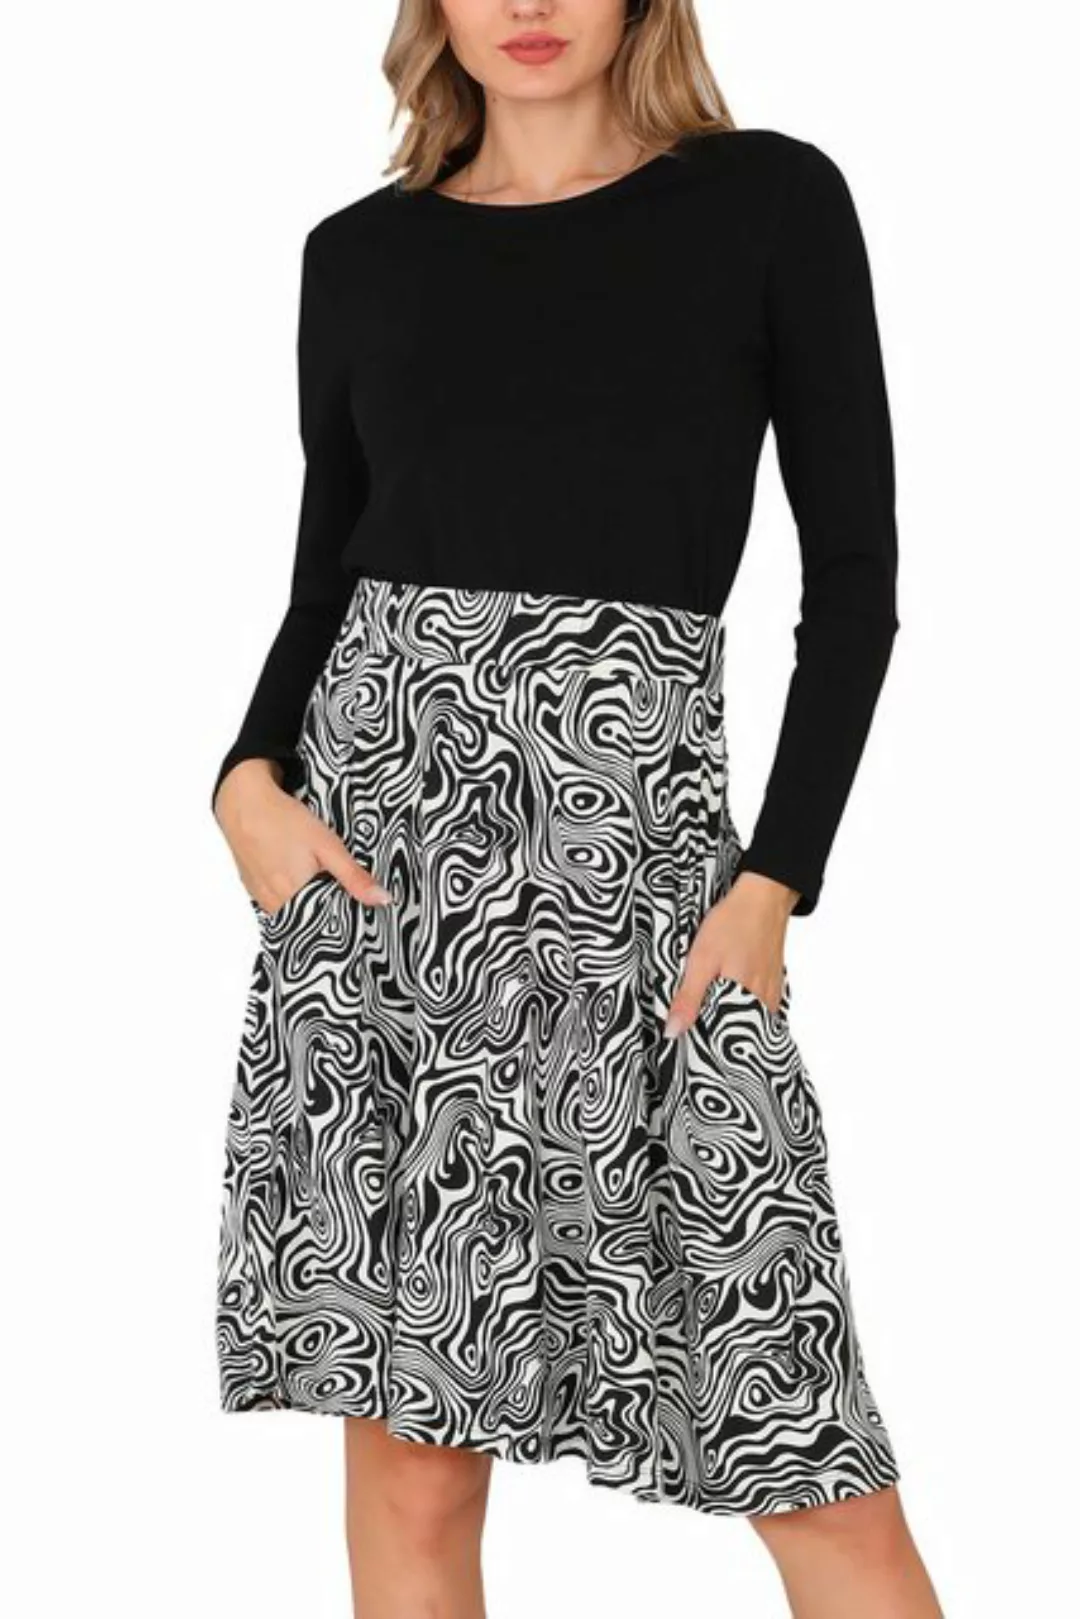 Bongual Midikleid 2-in-1 elegantes Kleid Zebra Print mit Taschen günstig online kaufen